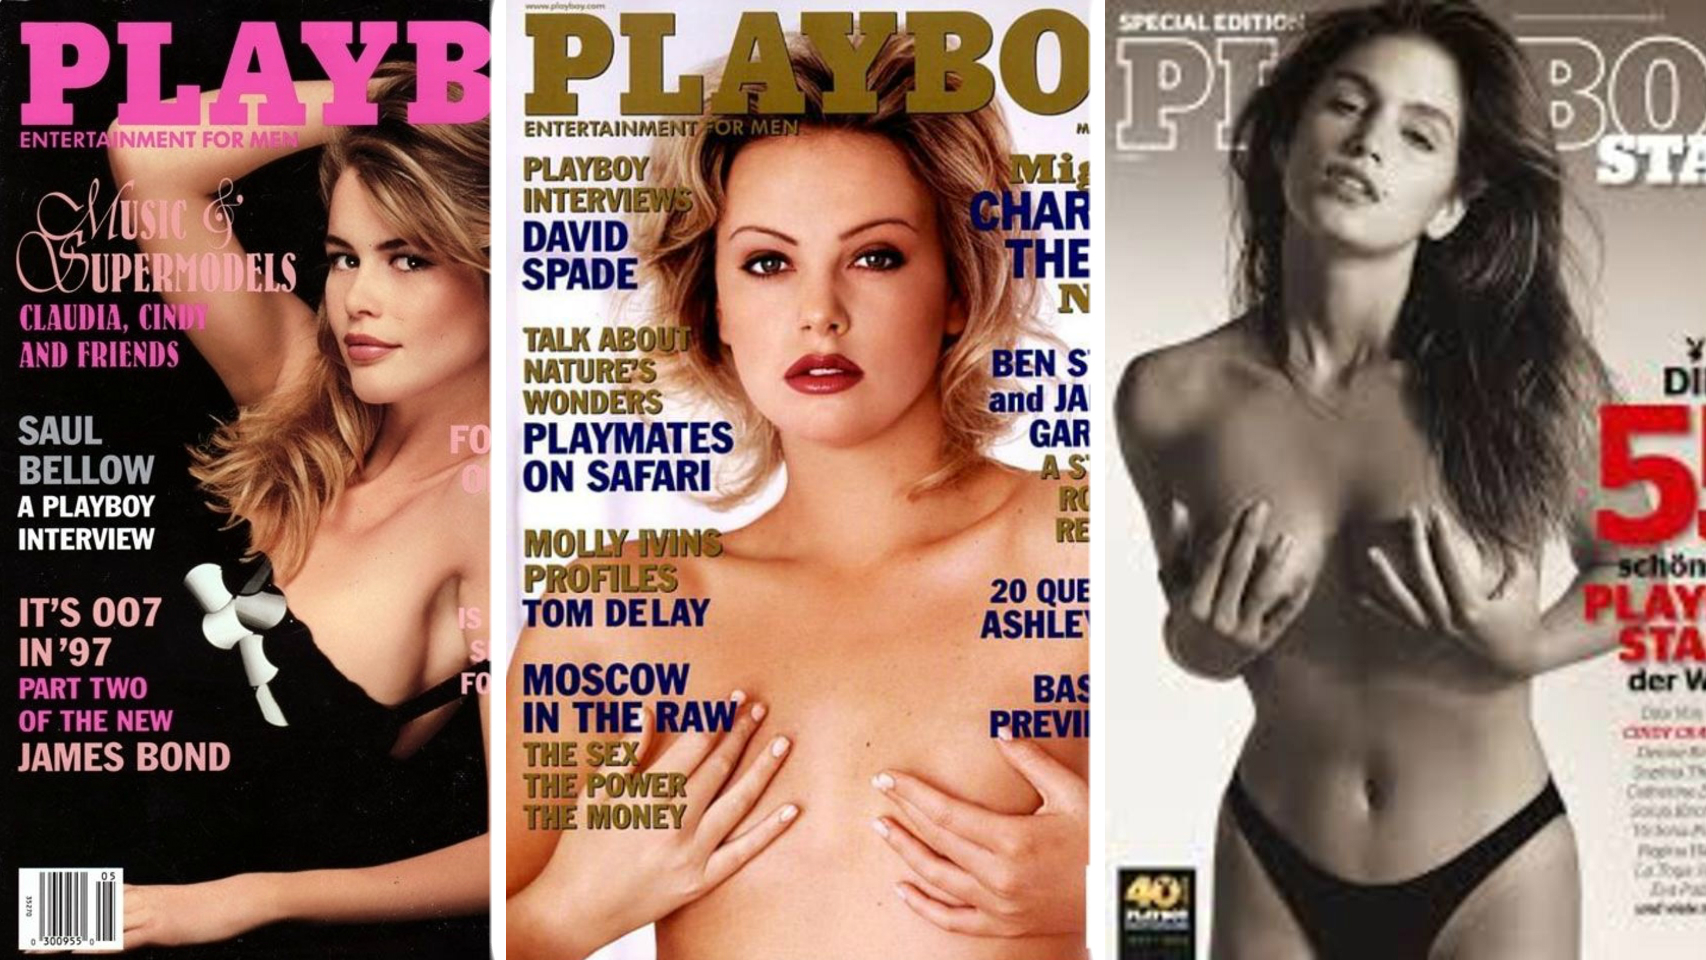 Claudia Schiffer, Charlize Theron, Cindy Crawford no tuvieron reparos en protagonizar la portada de la revista.